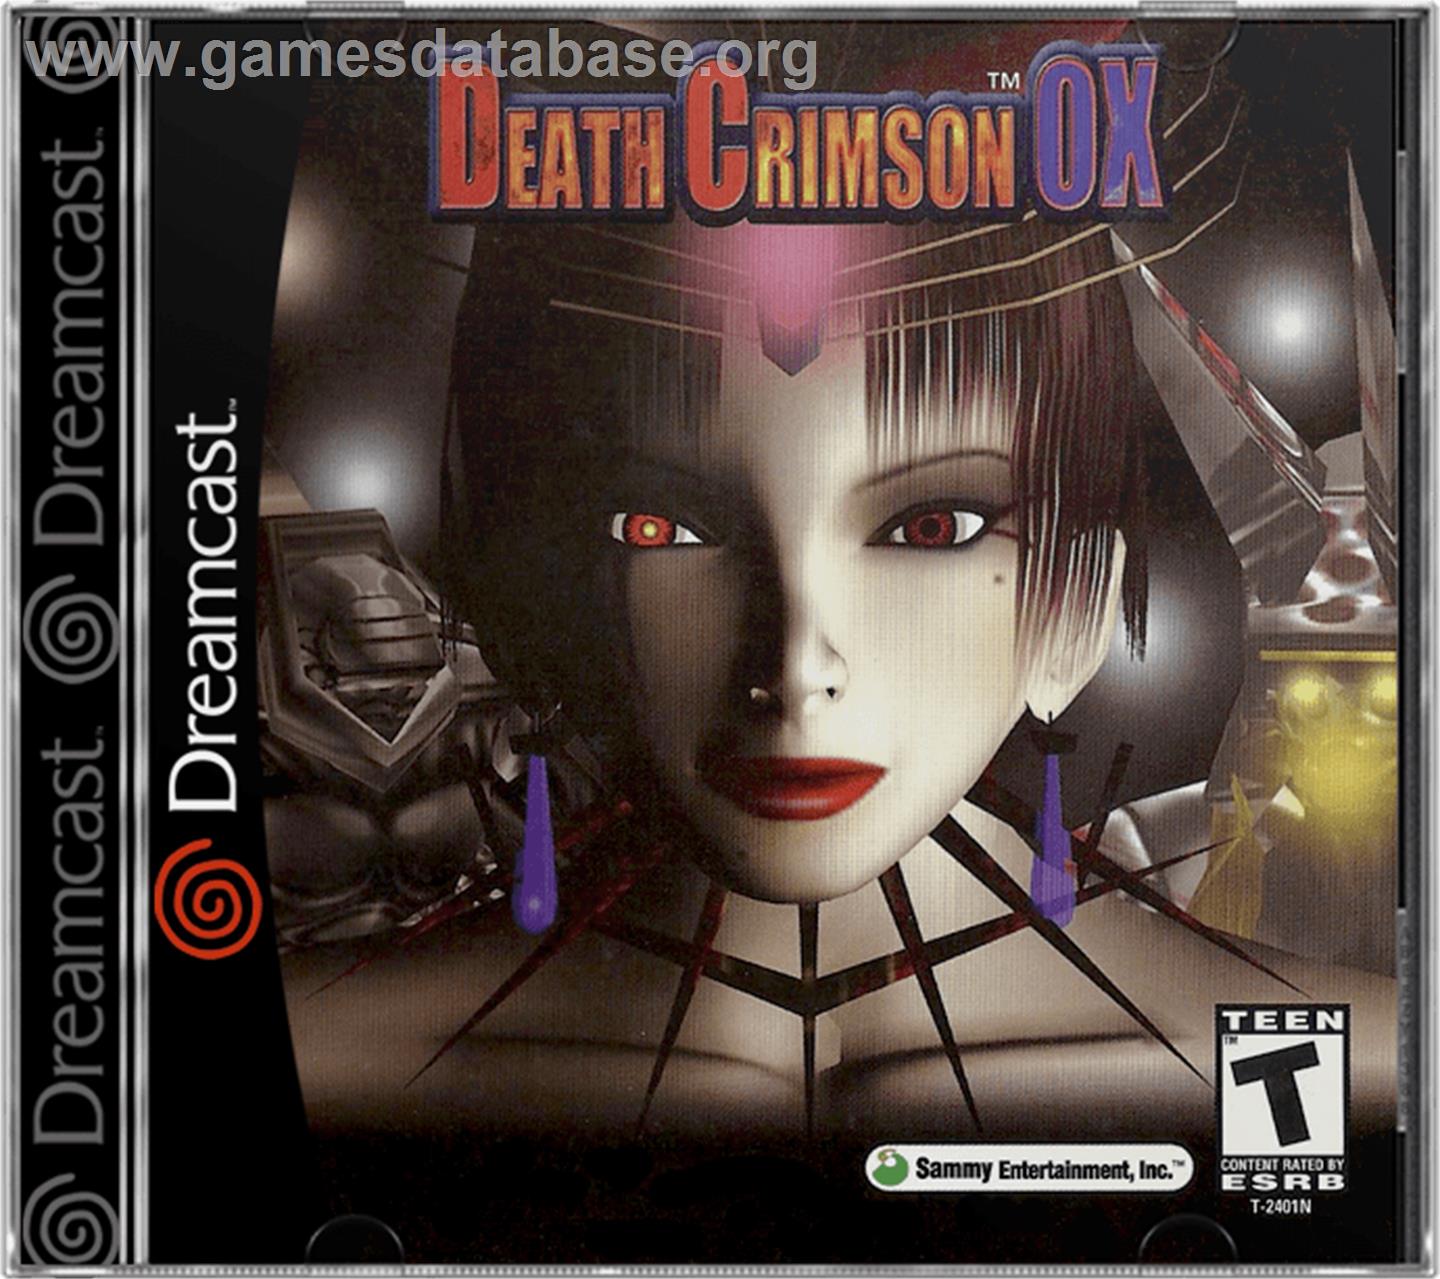 Death Crimson OX - Sega Dreamcast - Artwork - Box